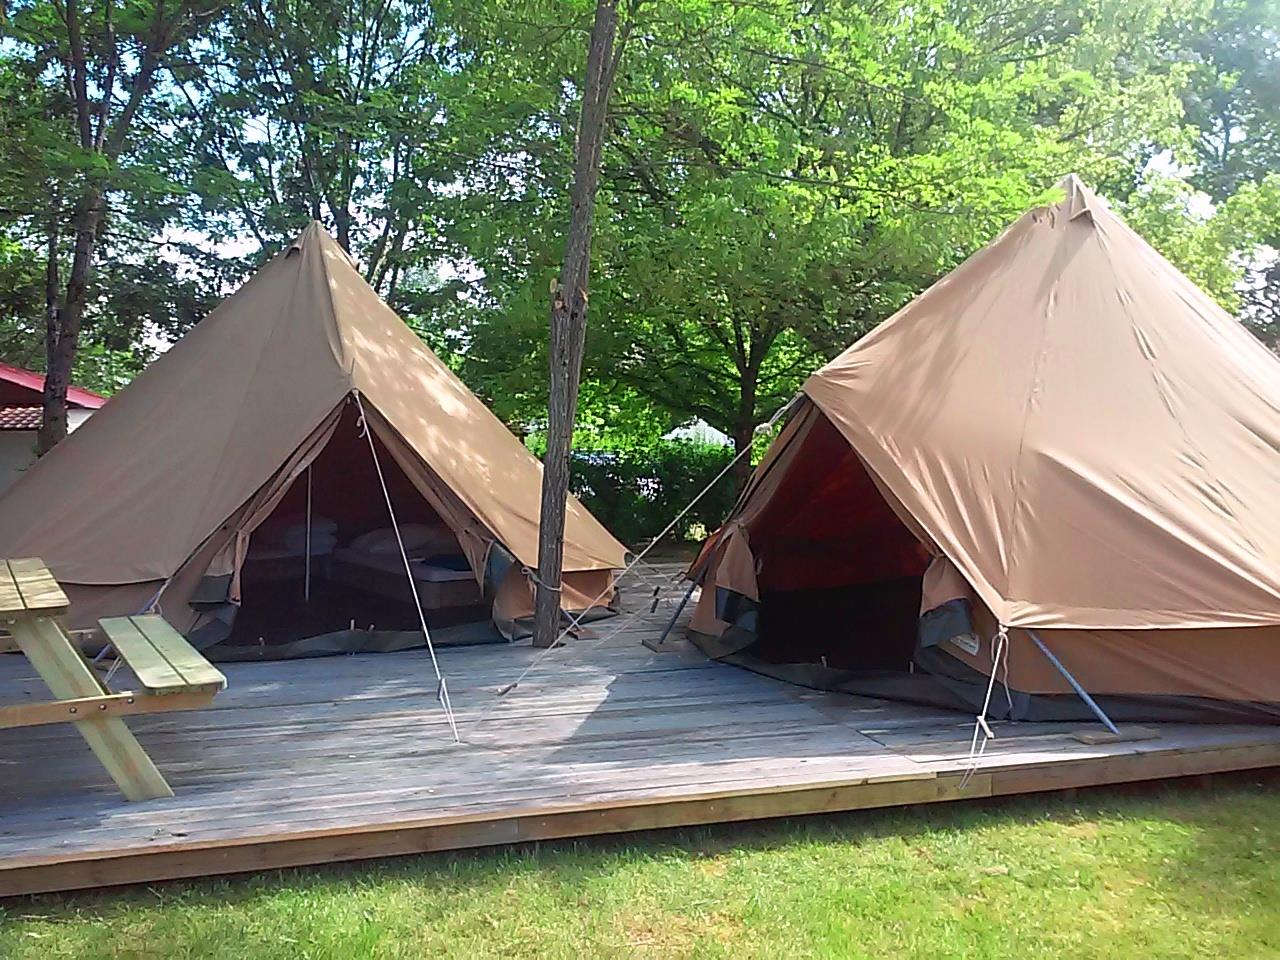 Accommodation - Tente Aménagée 2 Modules Sur Terrasse 1 Tente Repas Avec Cuisine Équipée Et 1 Tente Avec Un Espace Pour Dormir - Camping Las Patrasses